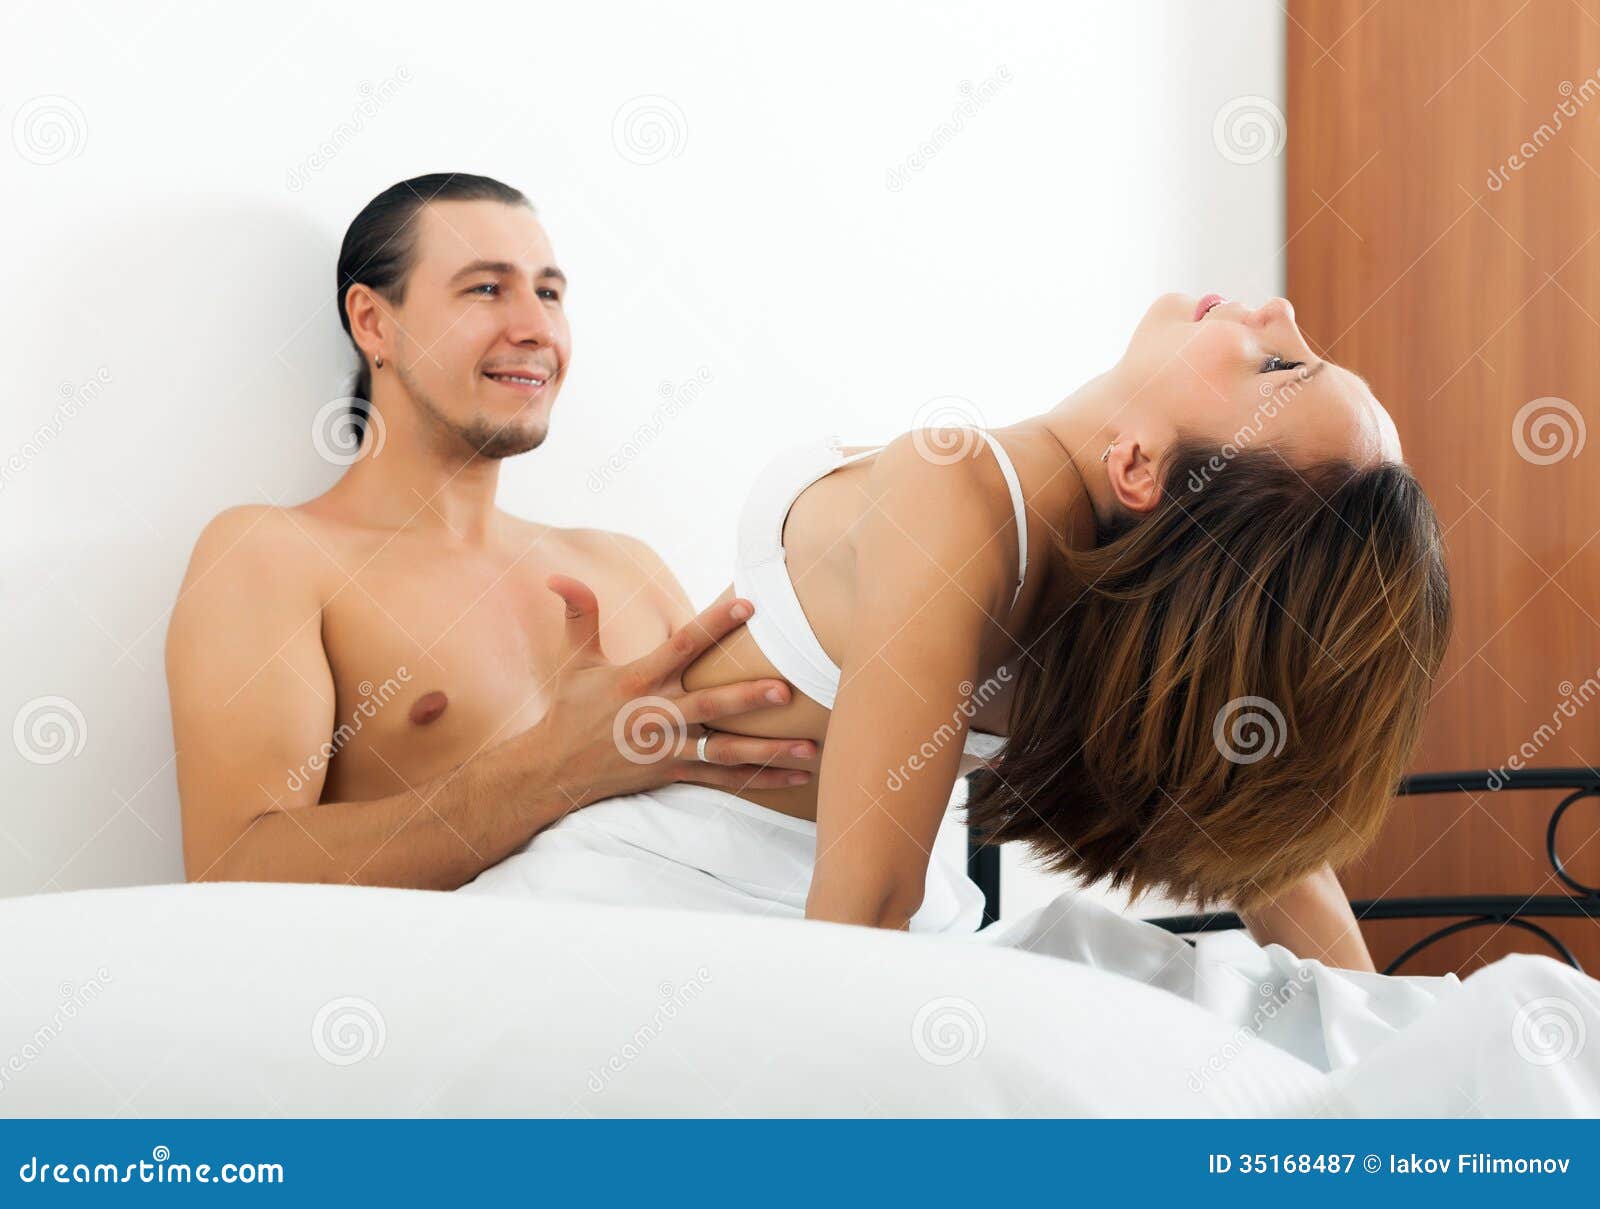 Men Woman Having Sex hd porr